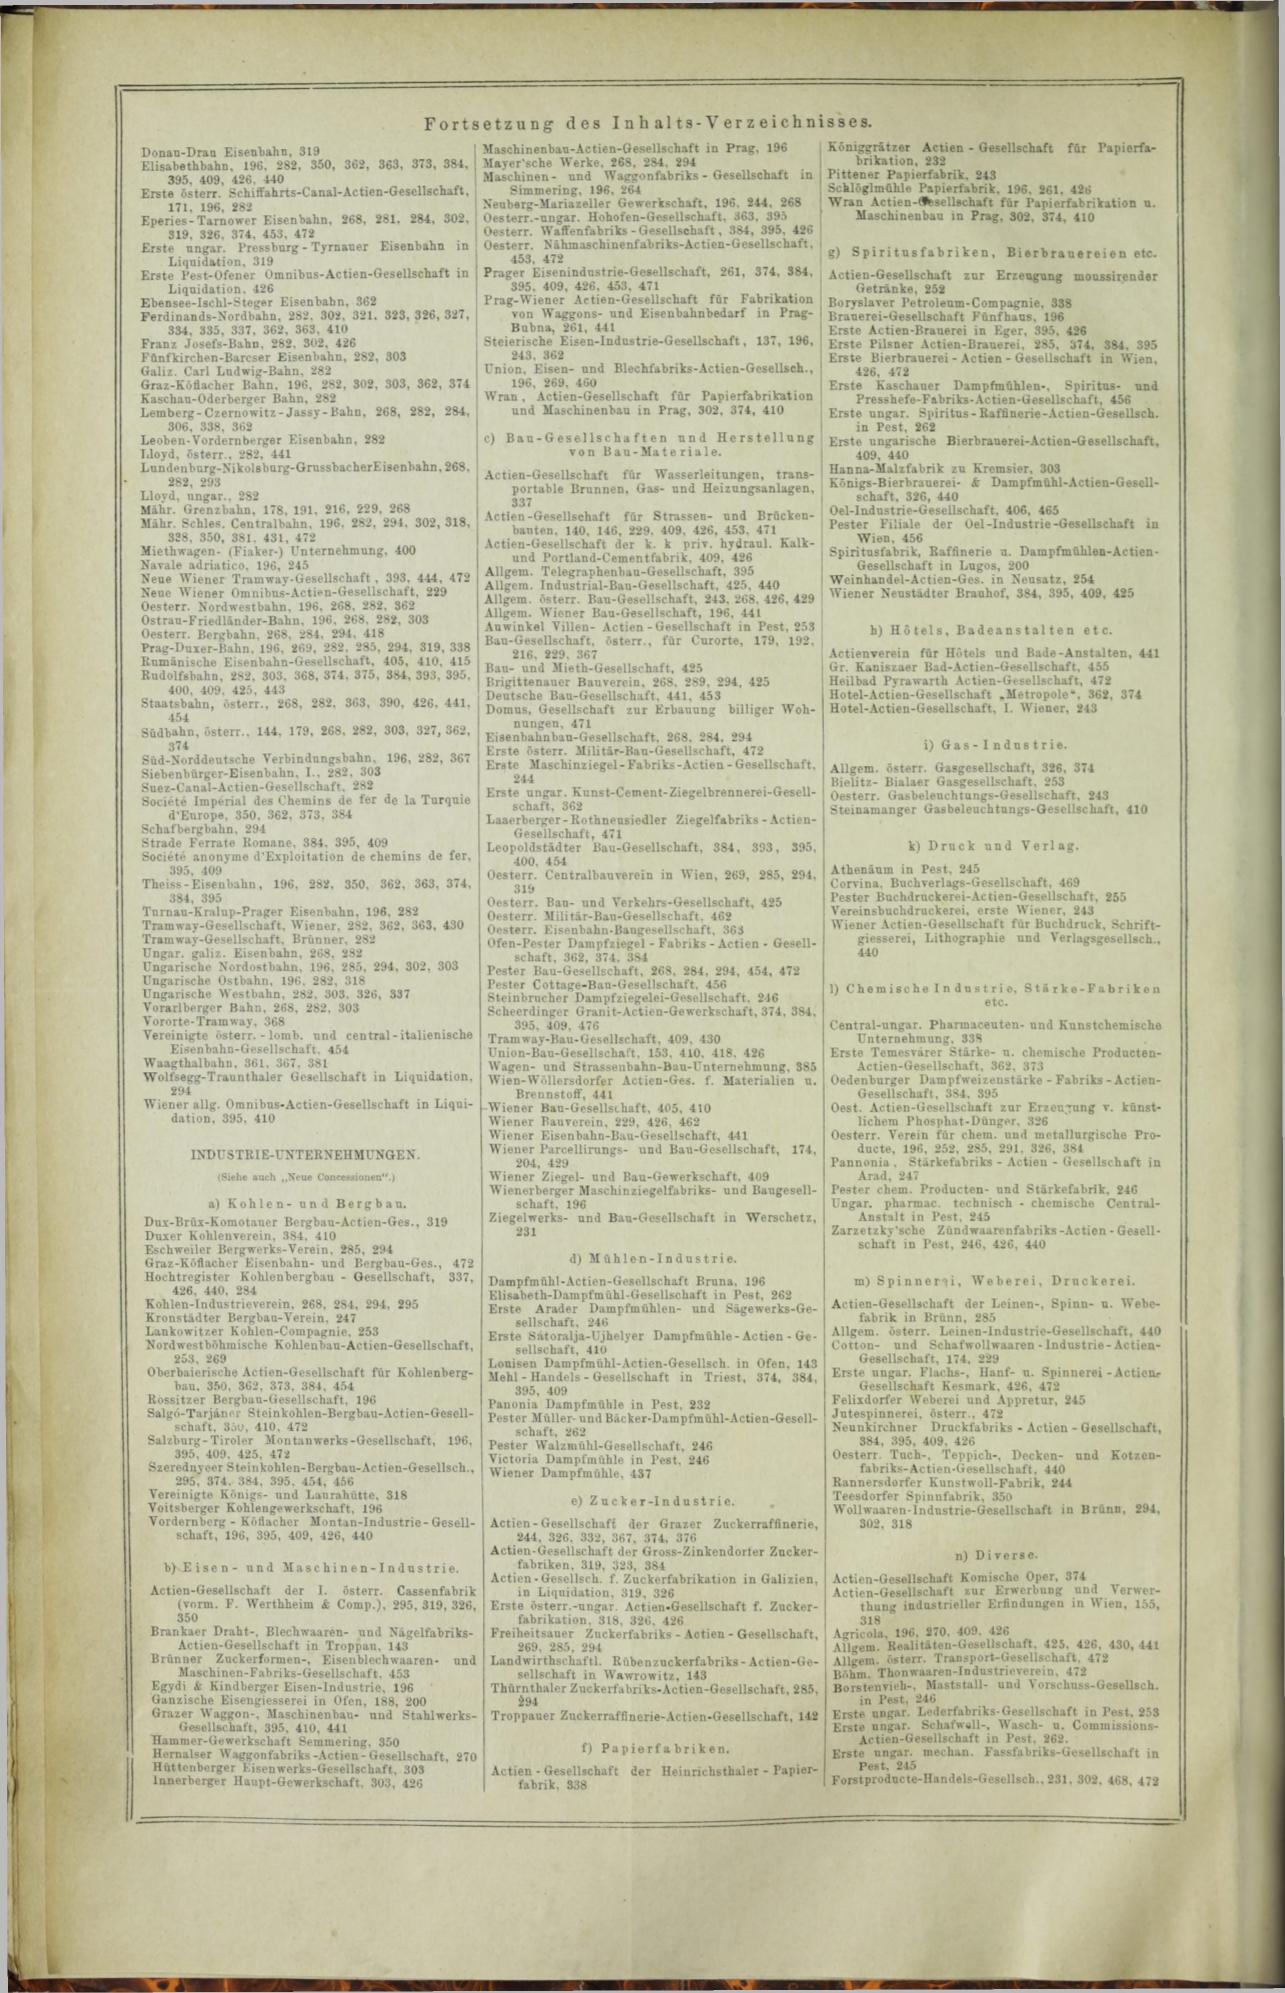 Der Tresor 07.08.1872 - Seite 24